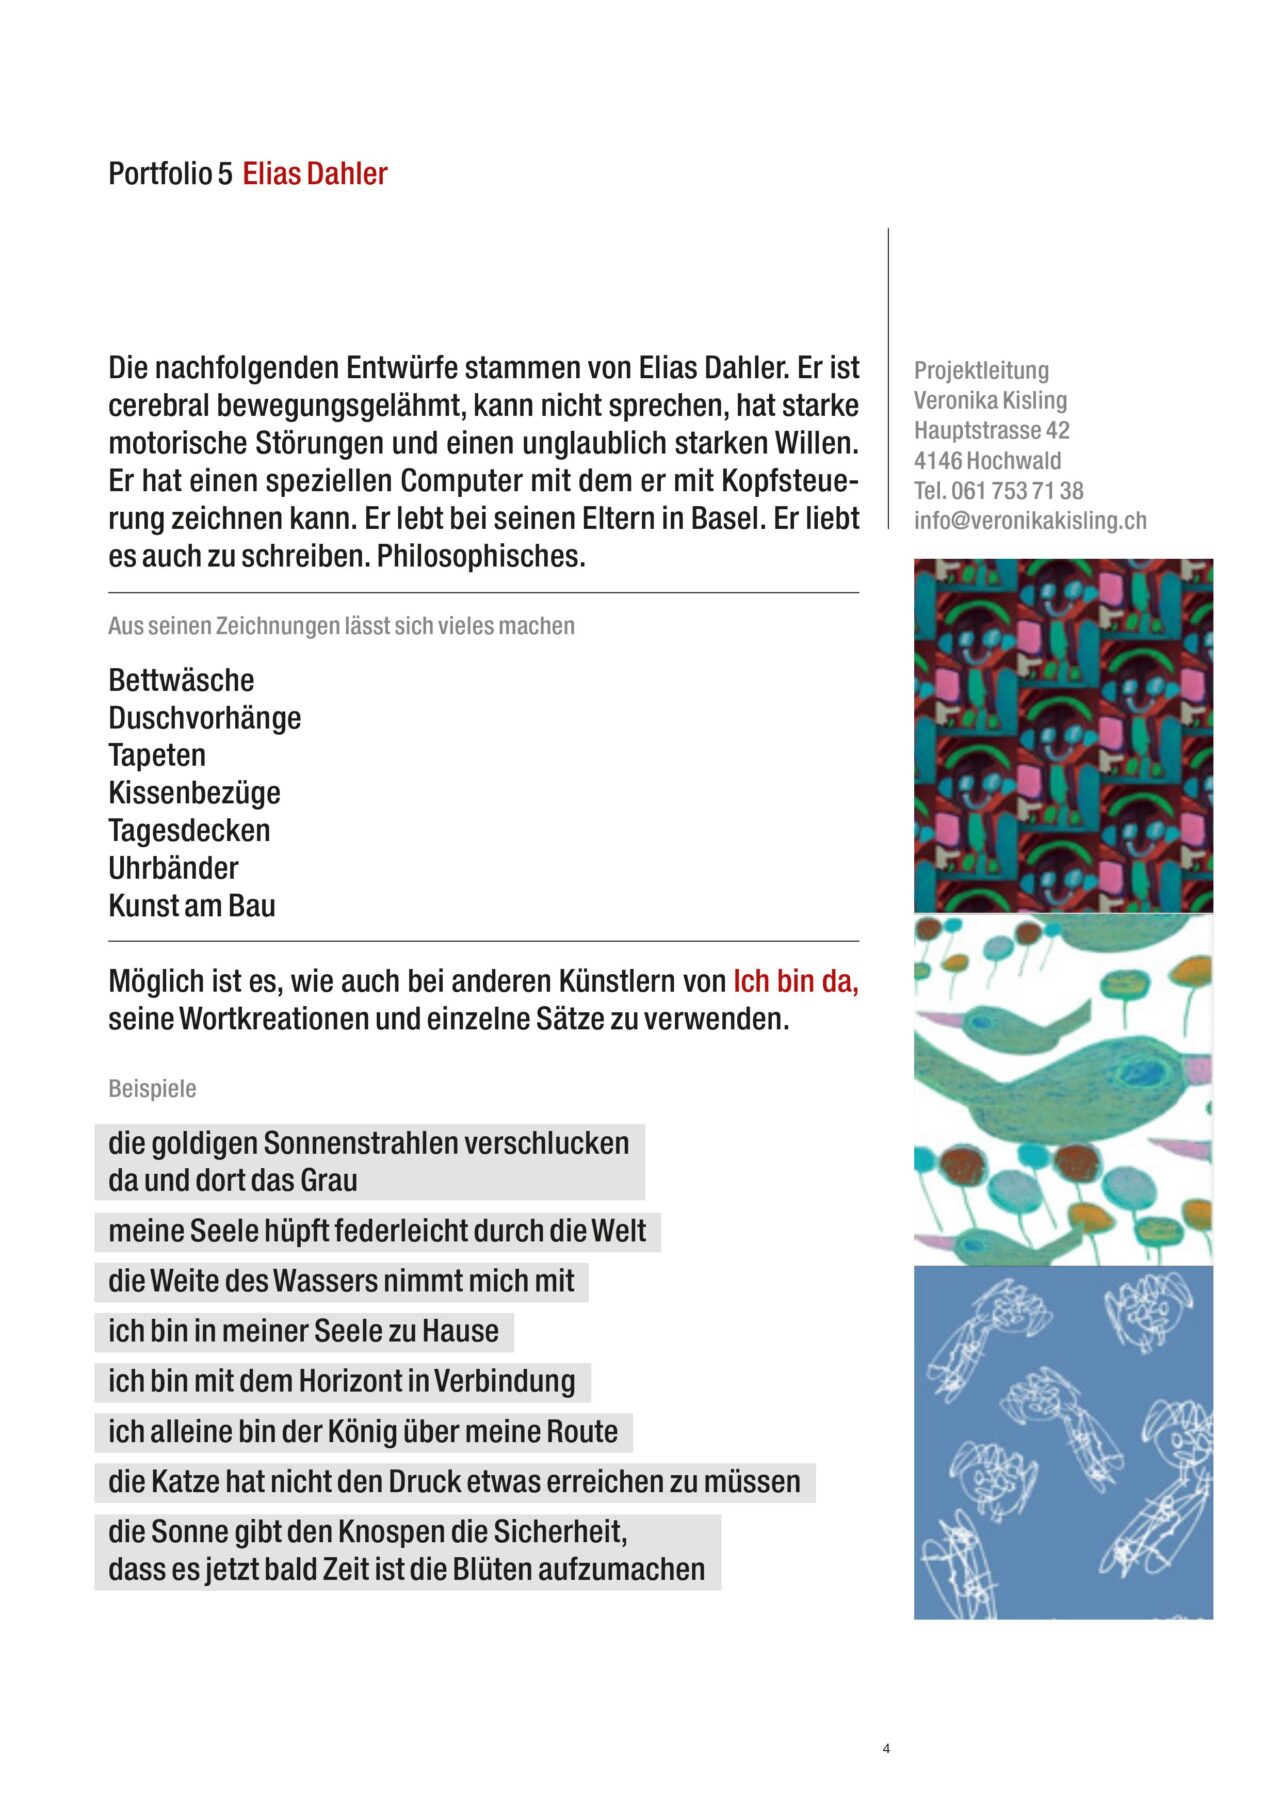 elias-dahler-textildesign-menschen-mit-behinderungen-kunst-art-brut-basel-schweiz